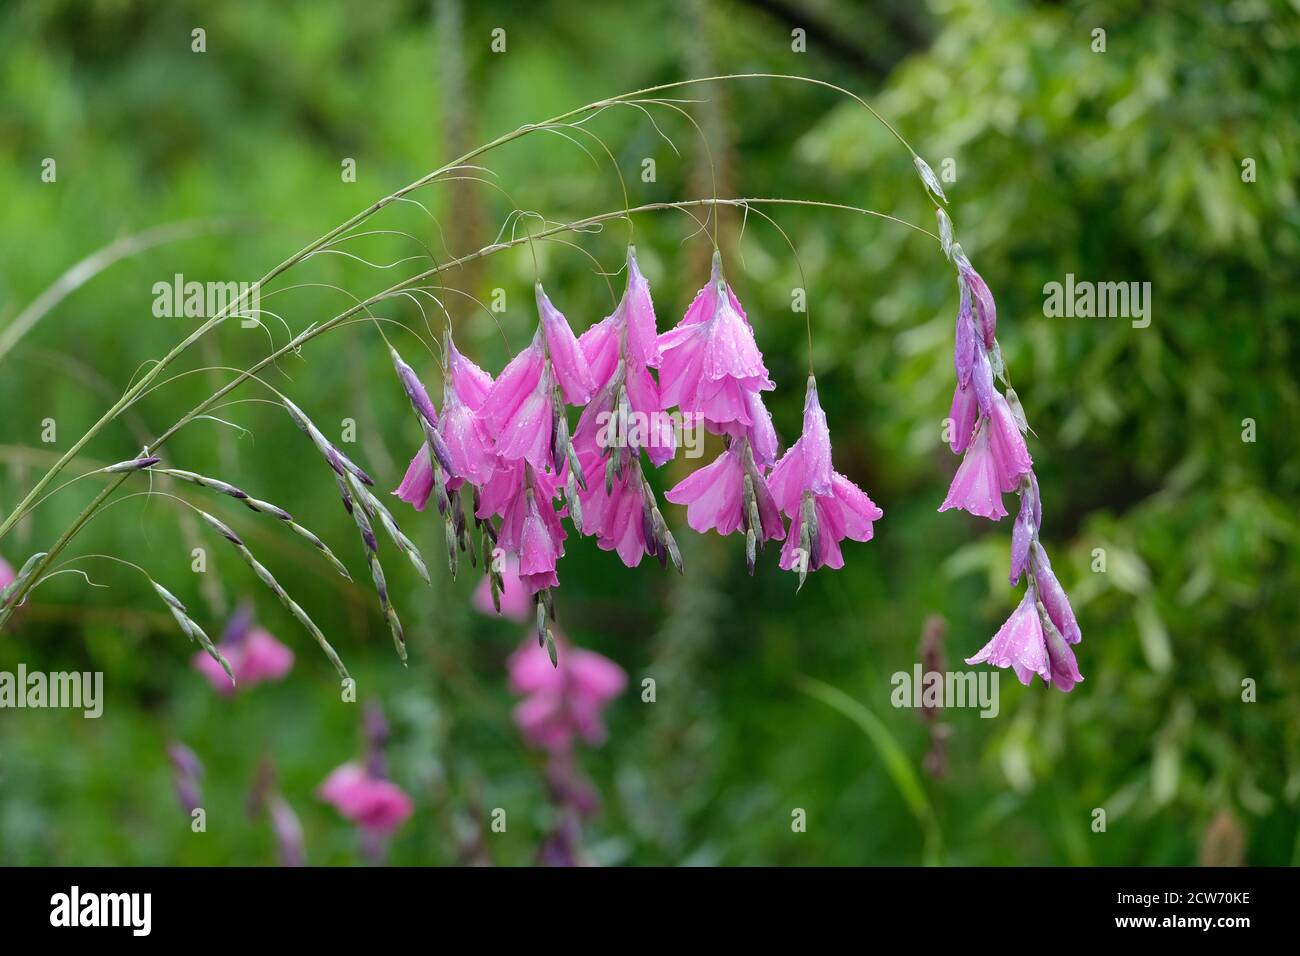 Dierama pulcherrimum. Angel's fishing rod. Wedding bells. Drooping or pendant flowers of silvery-grey pink. Wandflower Stock Photo